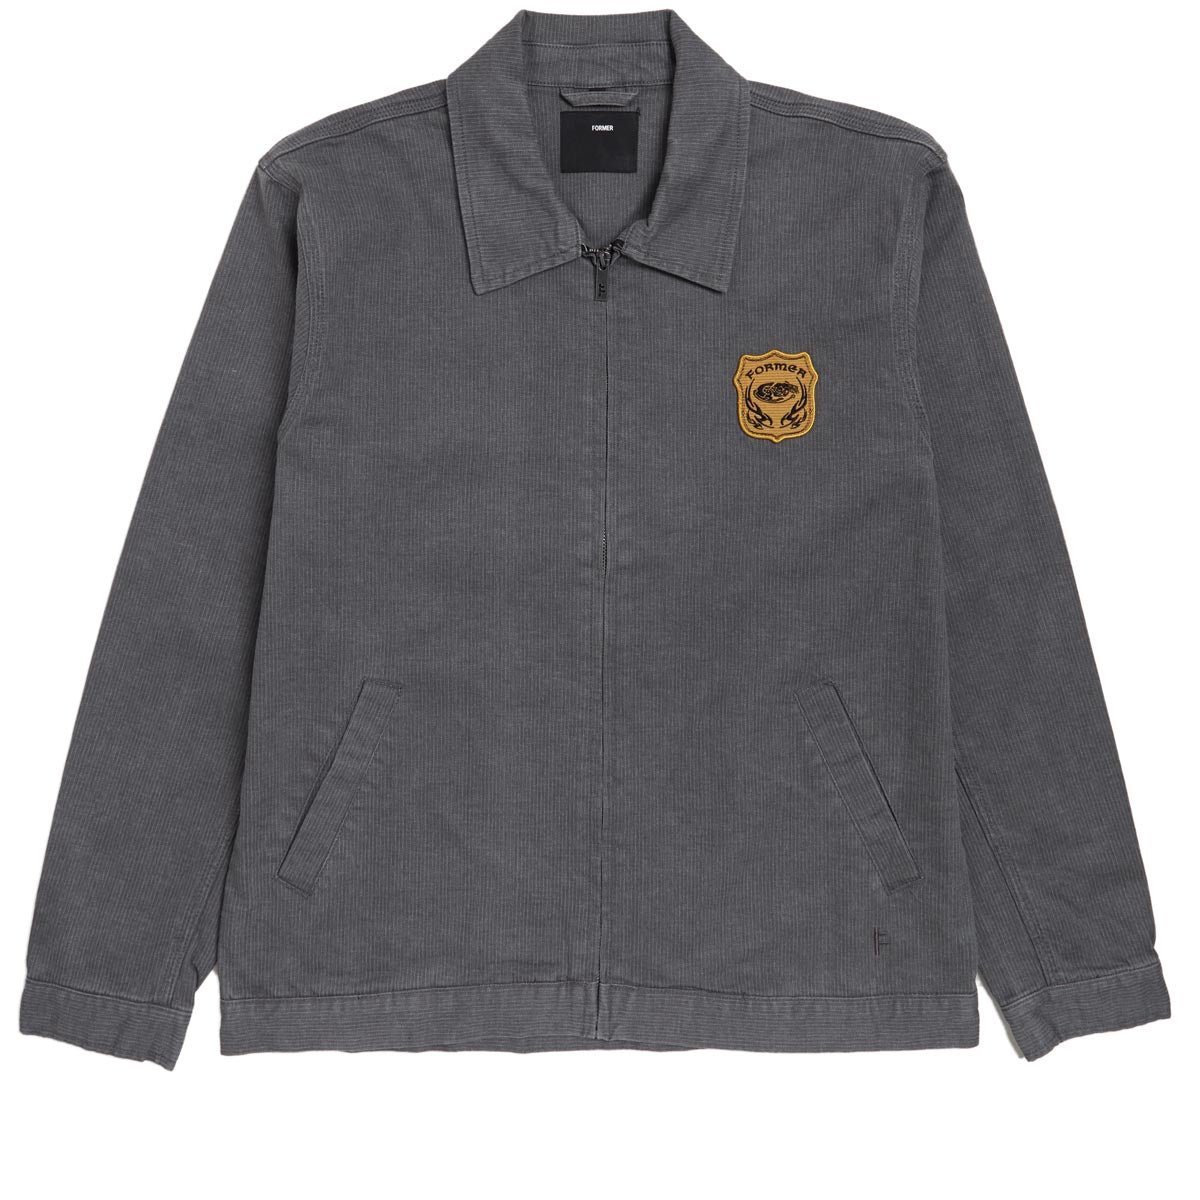 Former Distend Crest Jacket - Worn Grey image 1